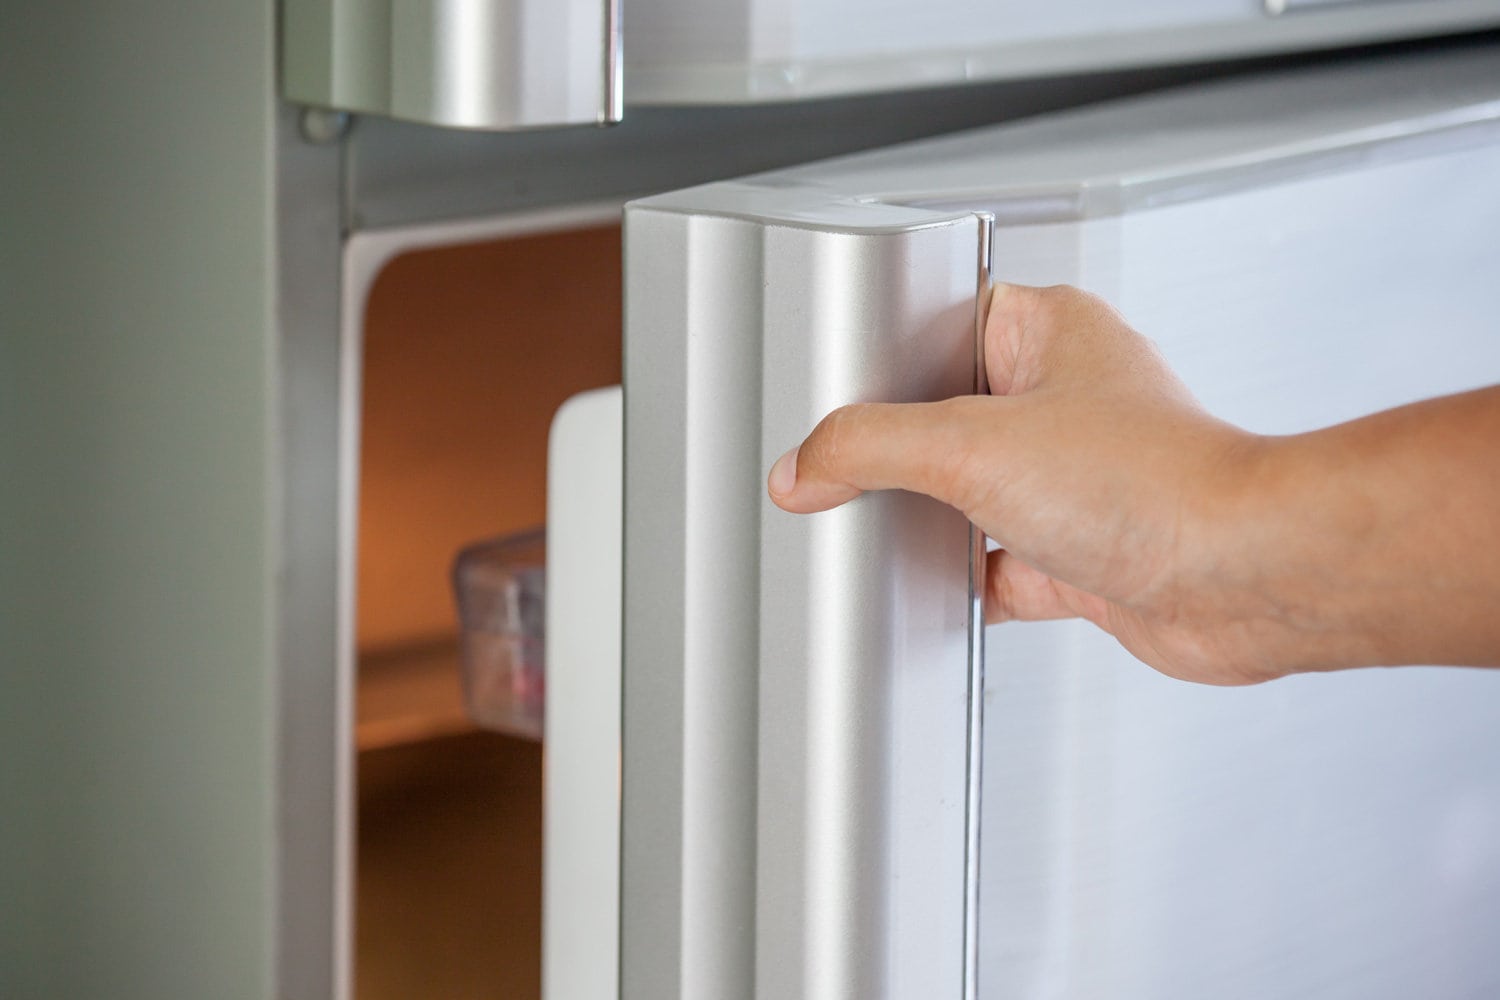 Woman hand opening a refrigerator door